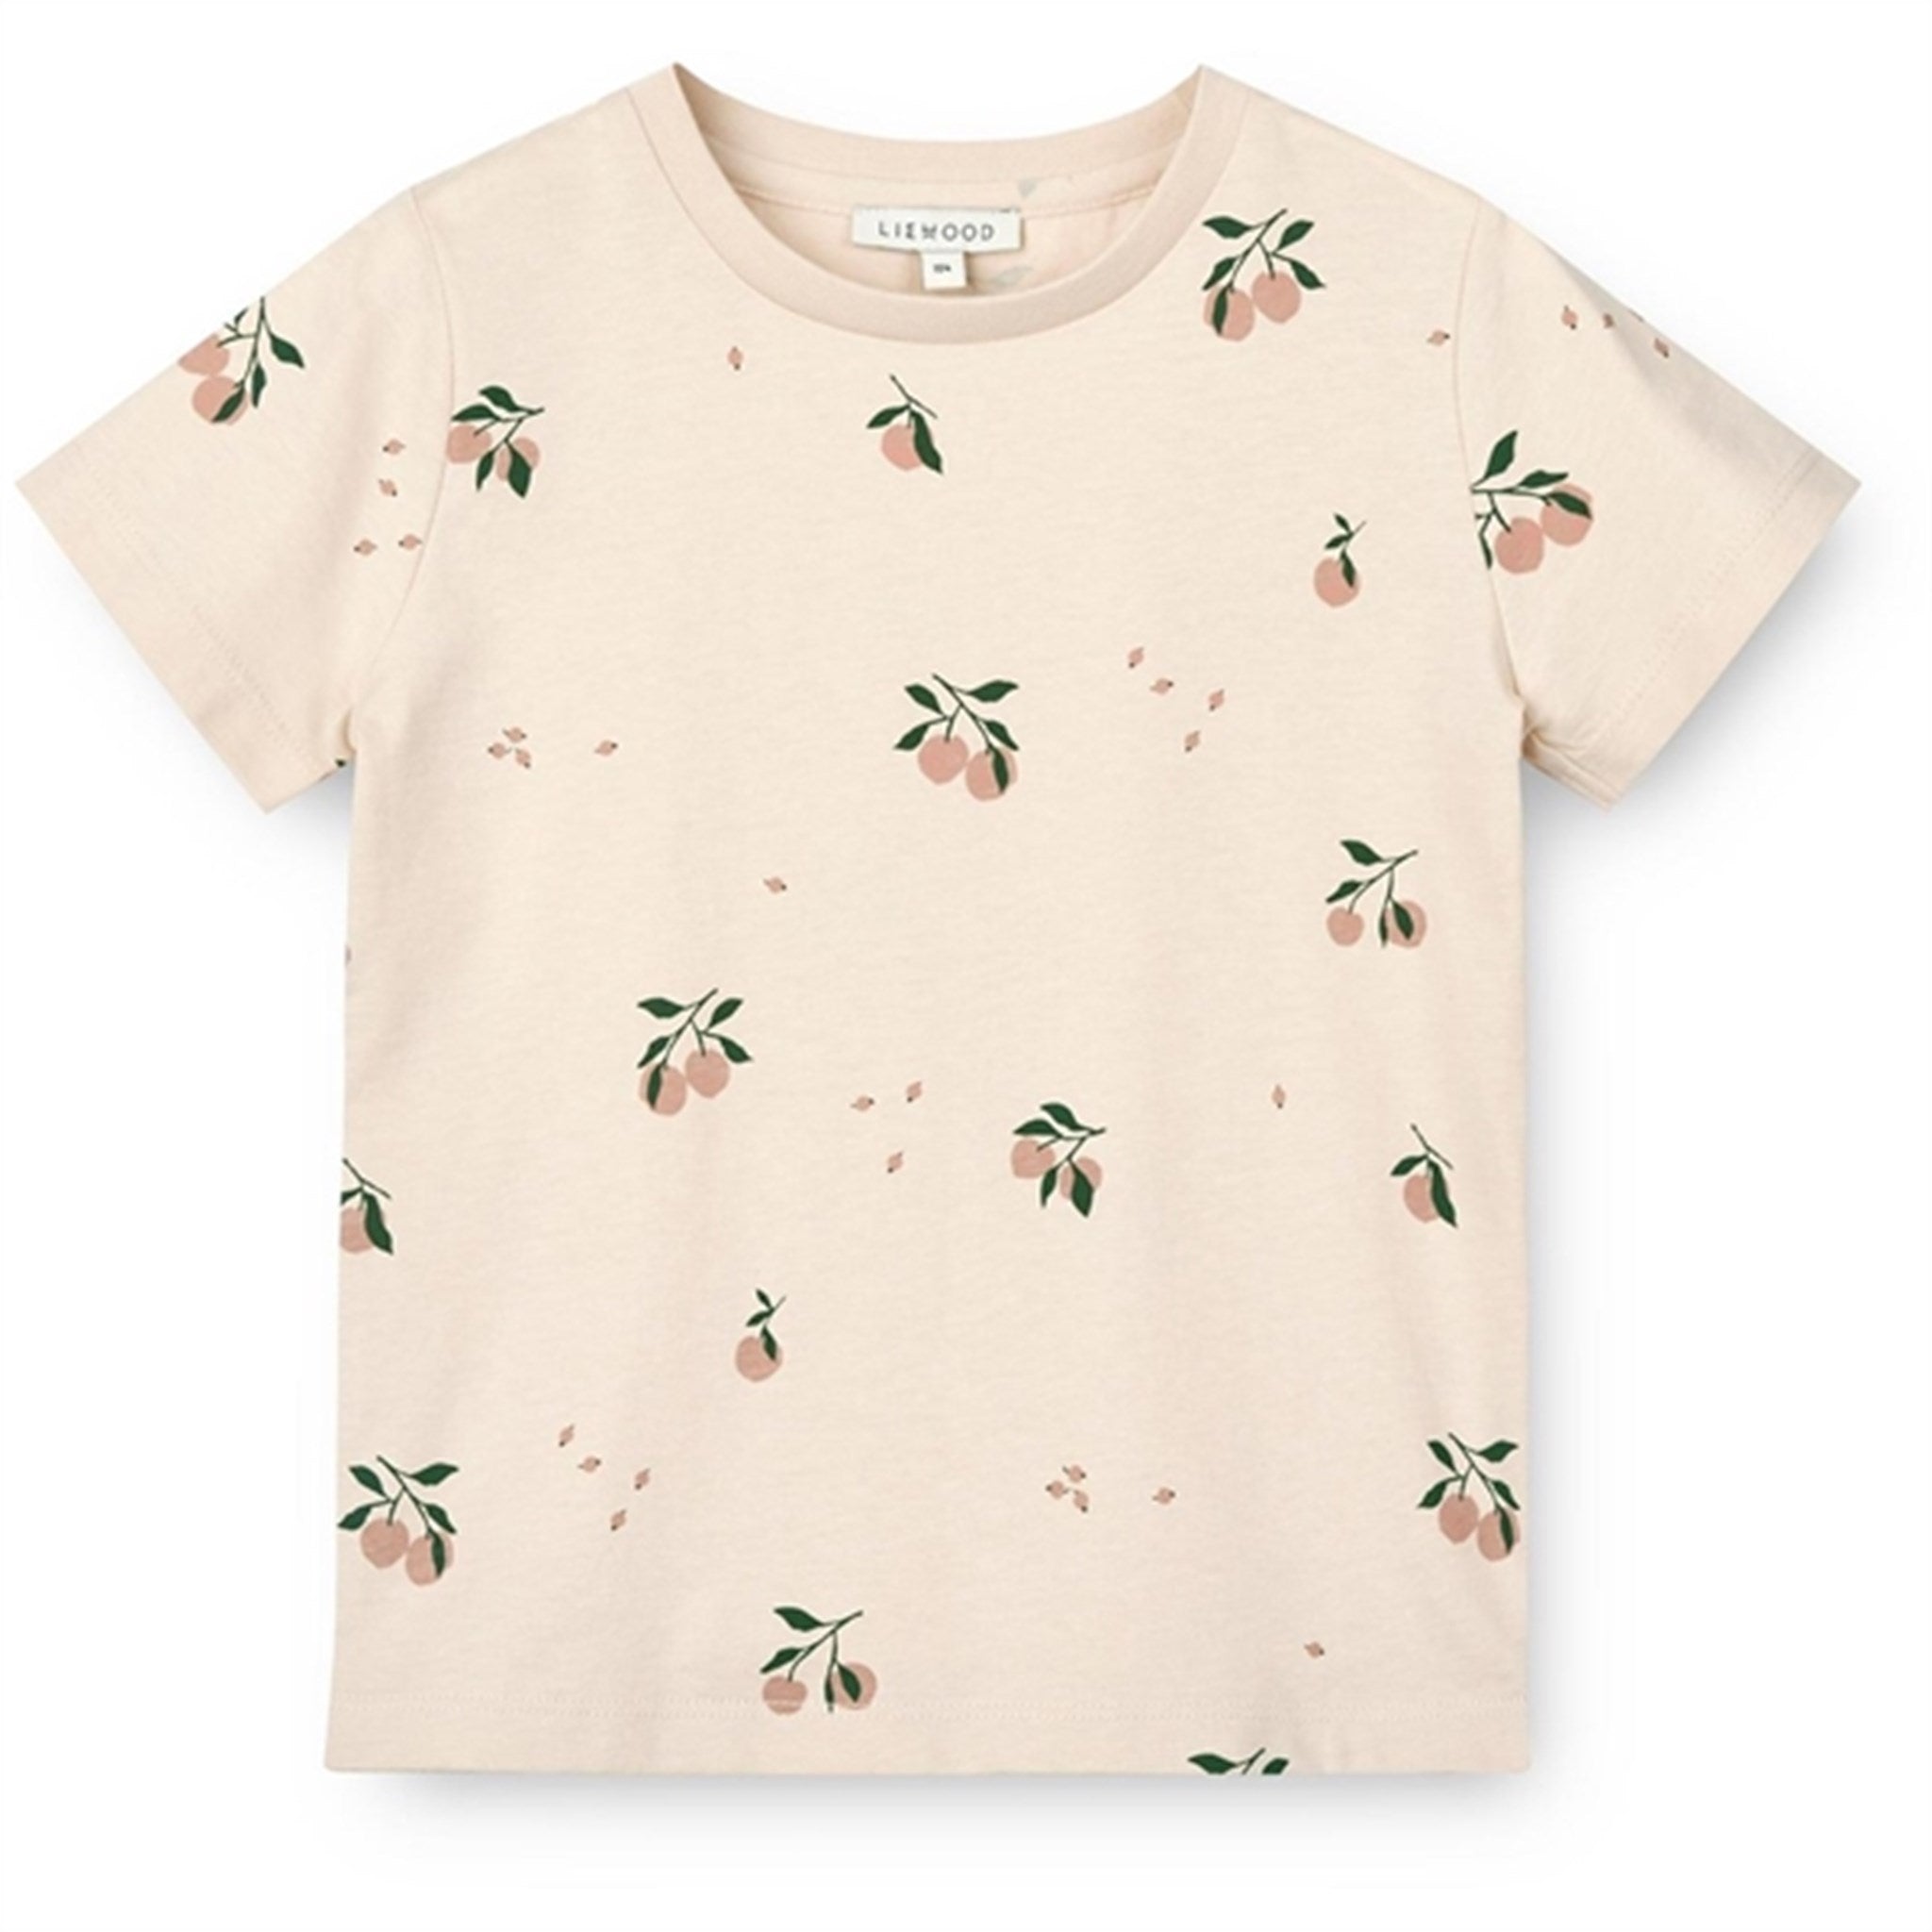 Liewood Peach/Sea Shell Apia Printed T-shirt